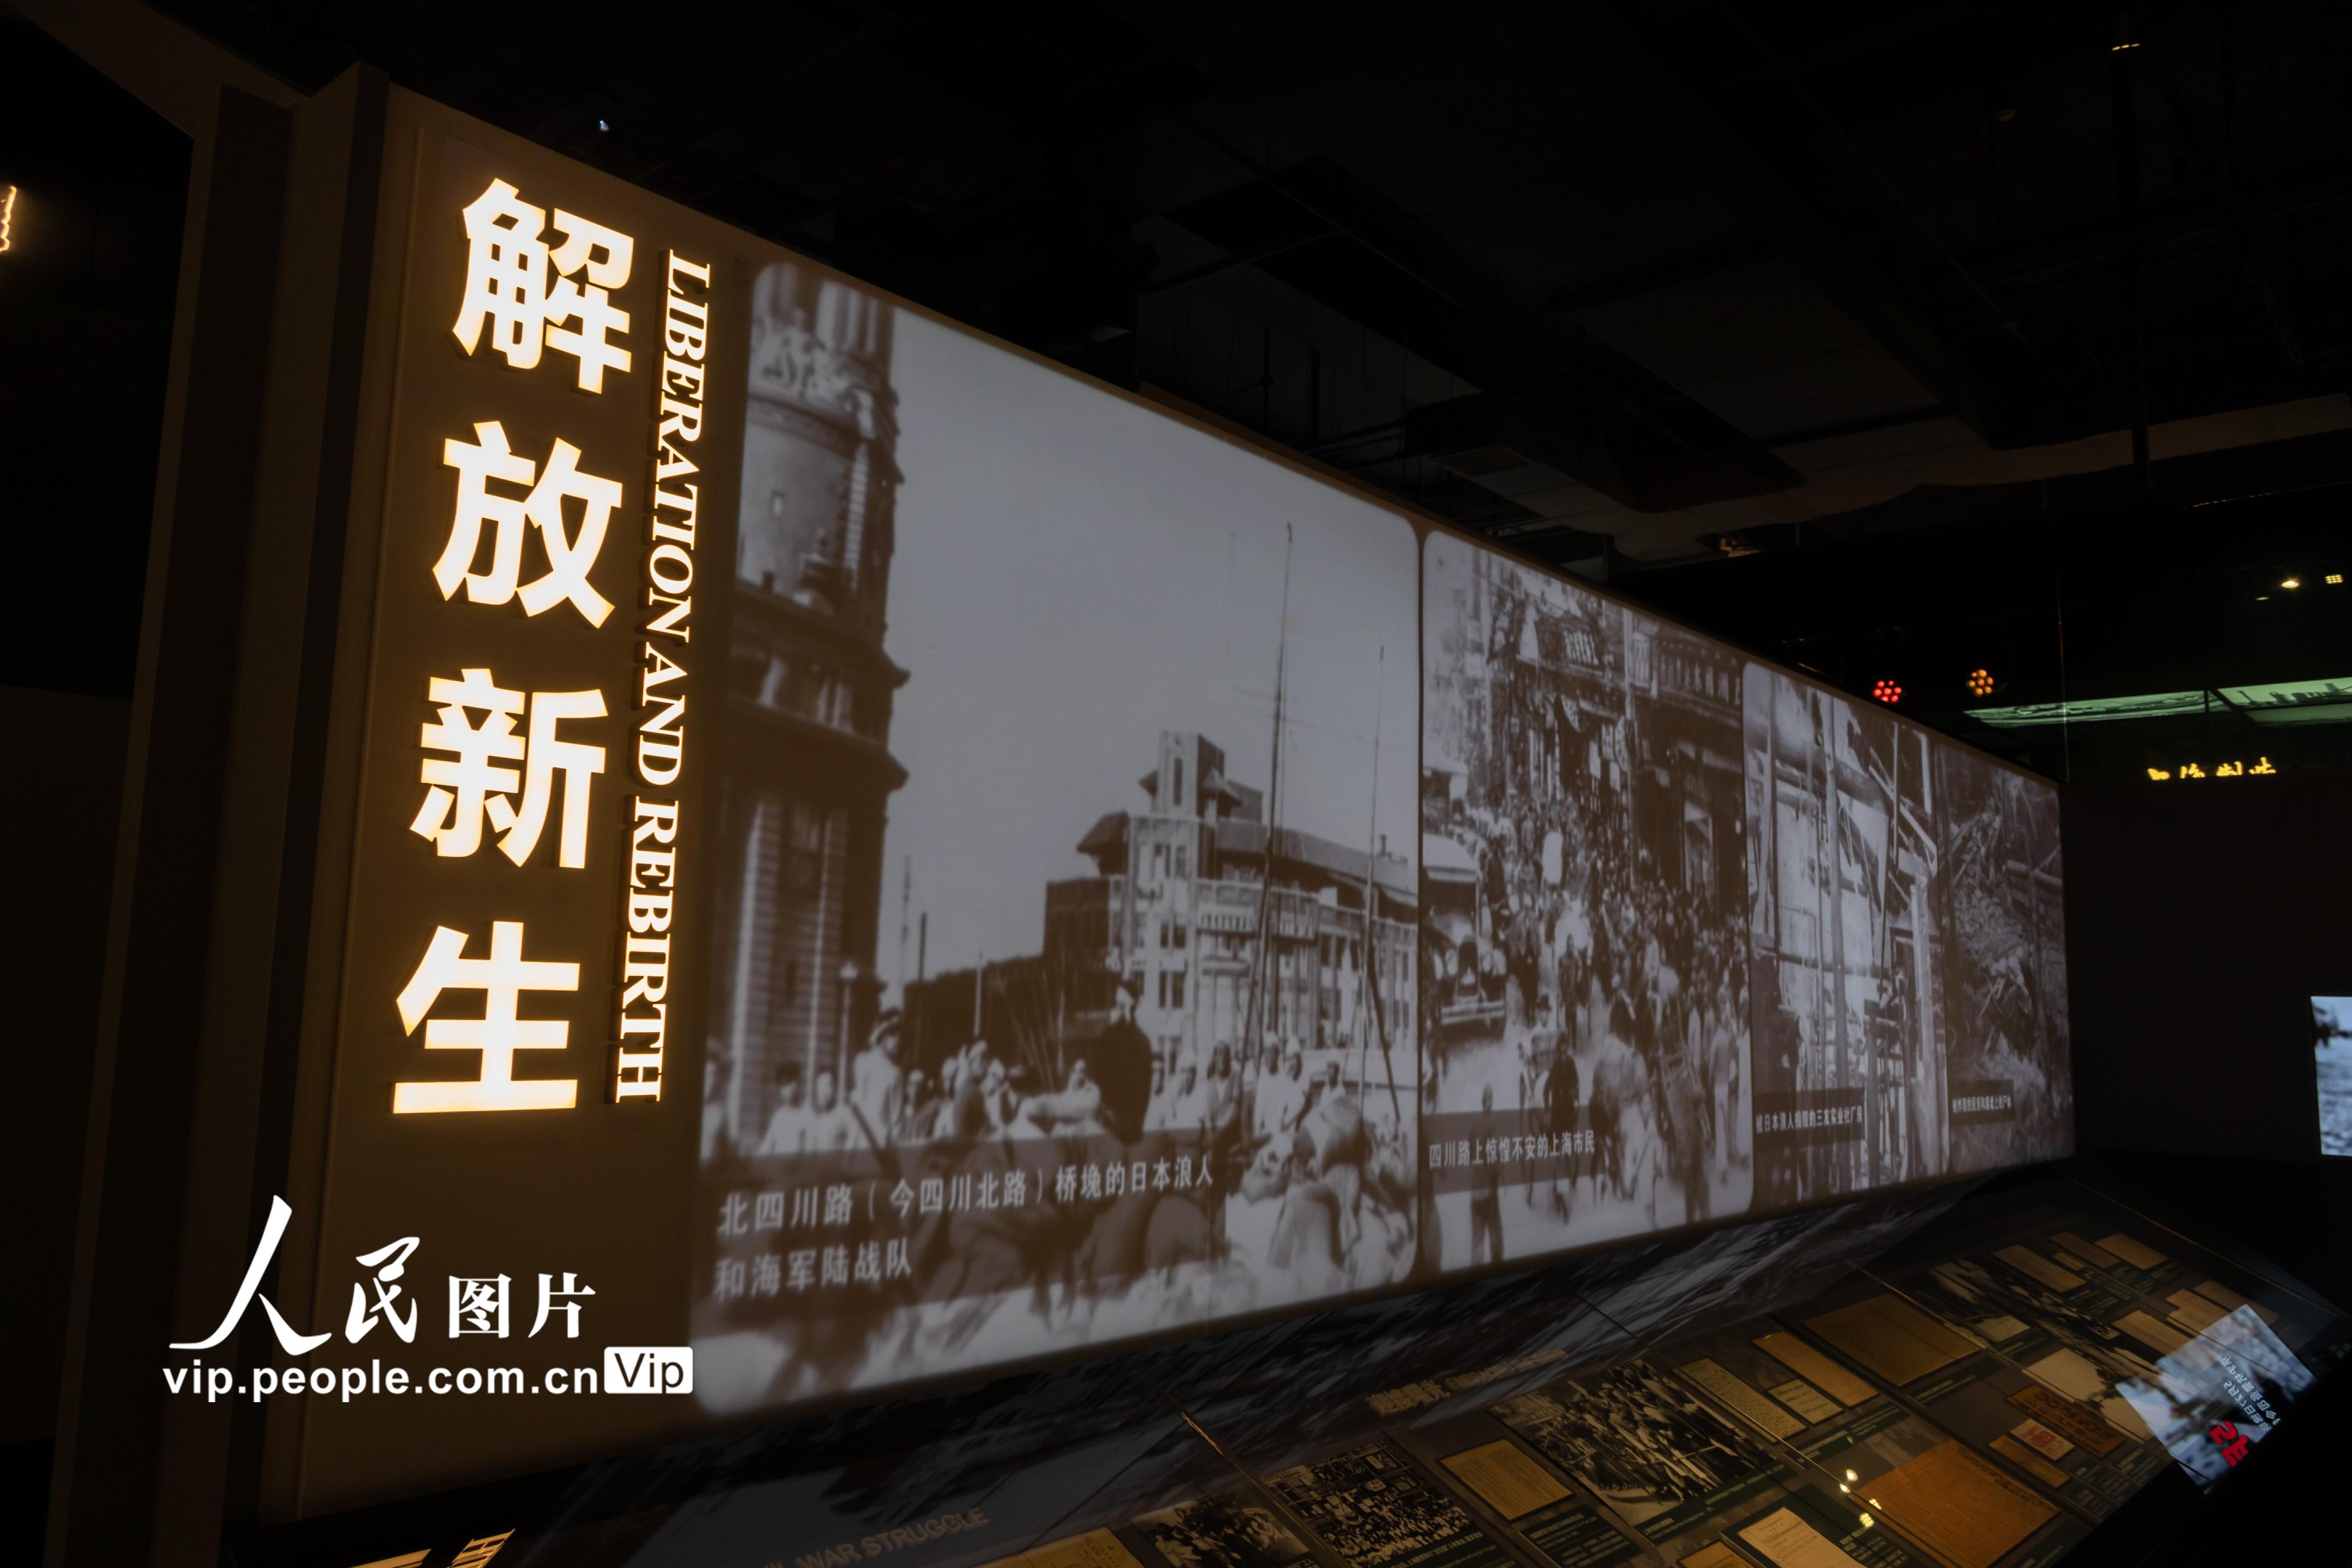 上海市檔案館新館投入運行 “城市記憶 時光珍藏”主題展向公眾開放【5】